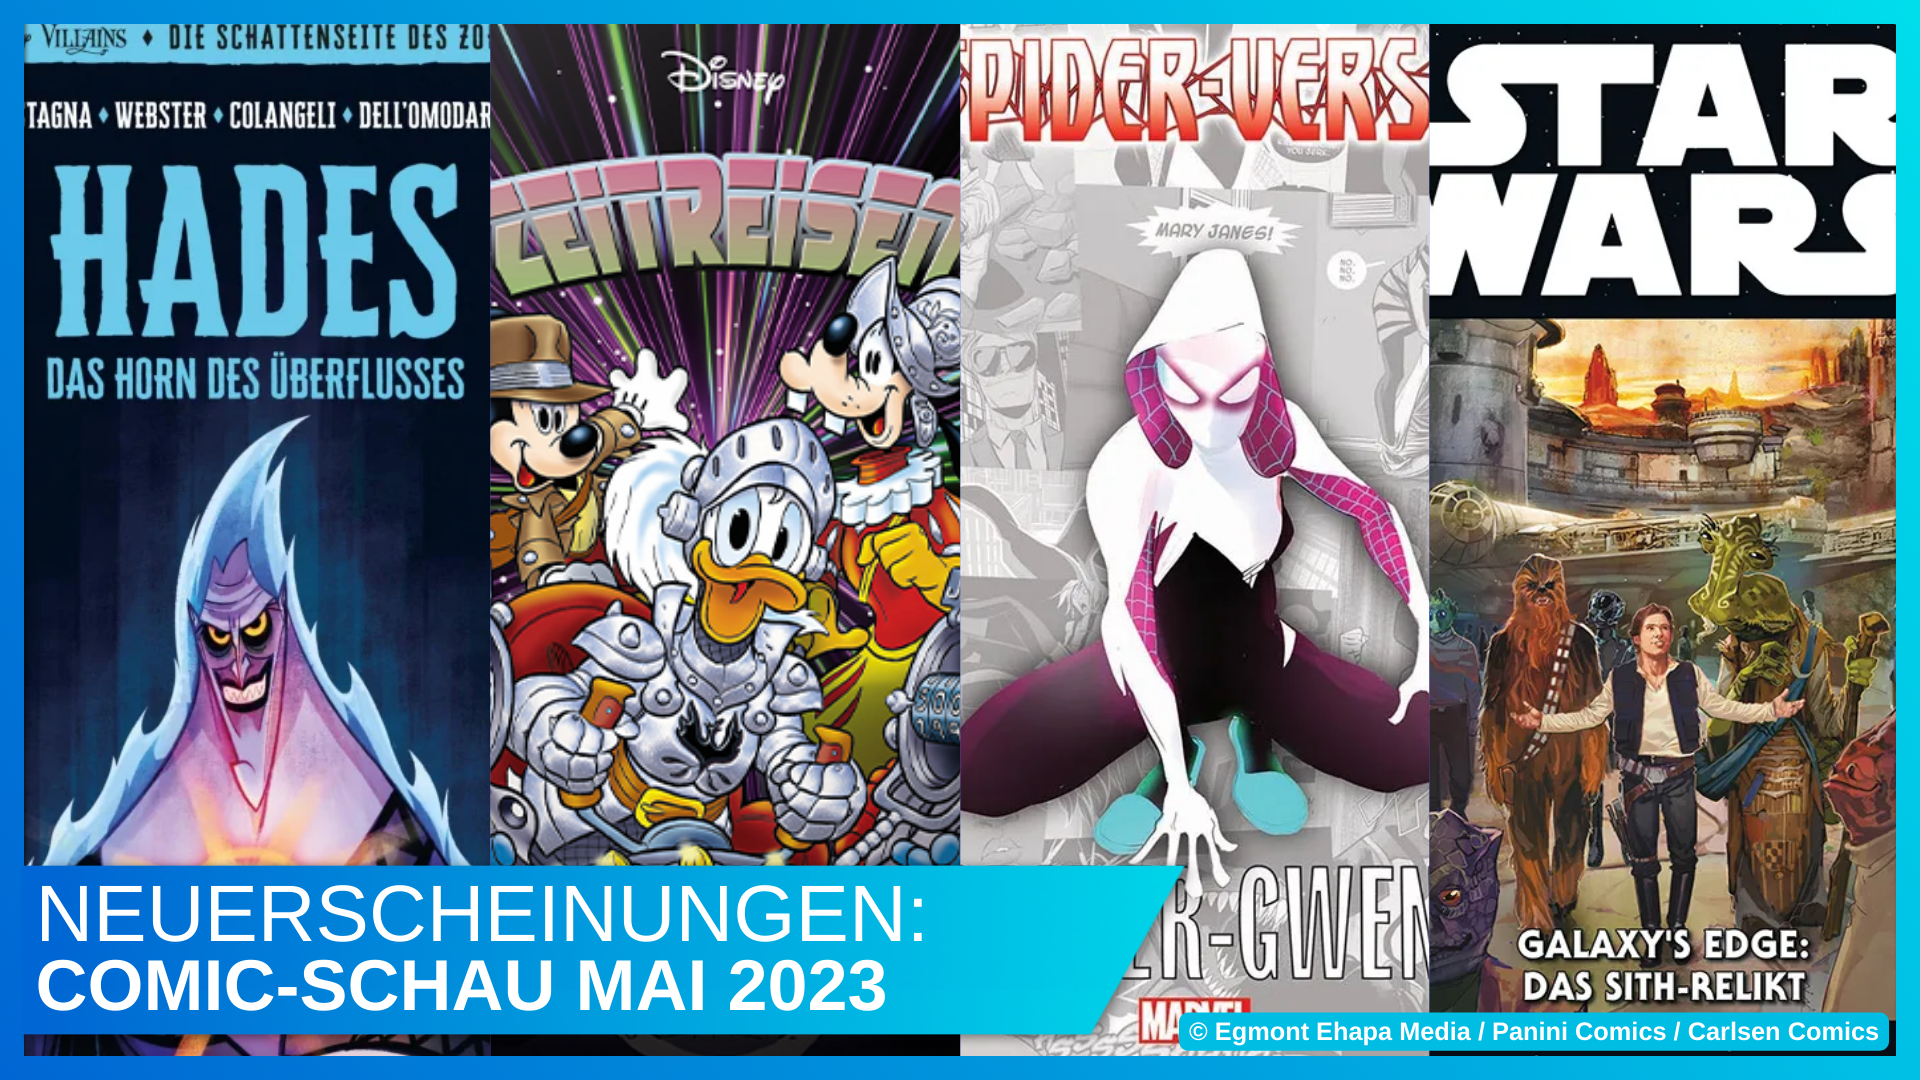 Disney Comic Schau Mai 2023: Hades, Zeitreise, Spider-Verse, Galaxy's Edge